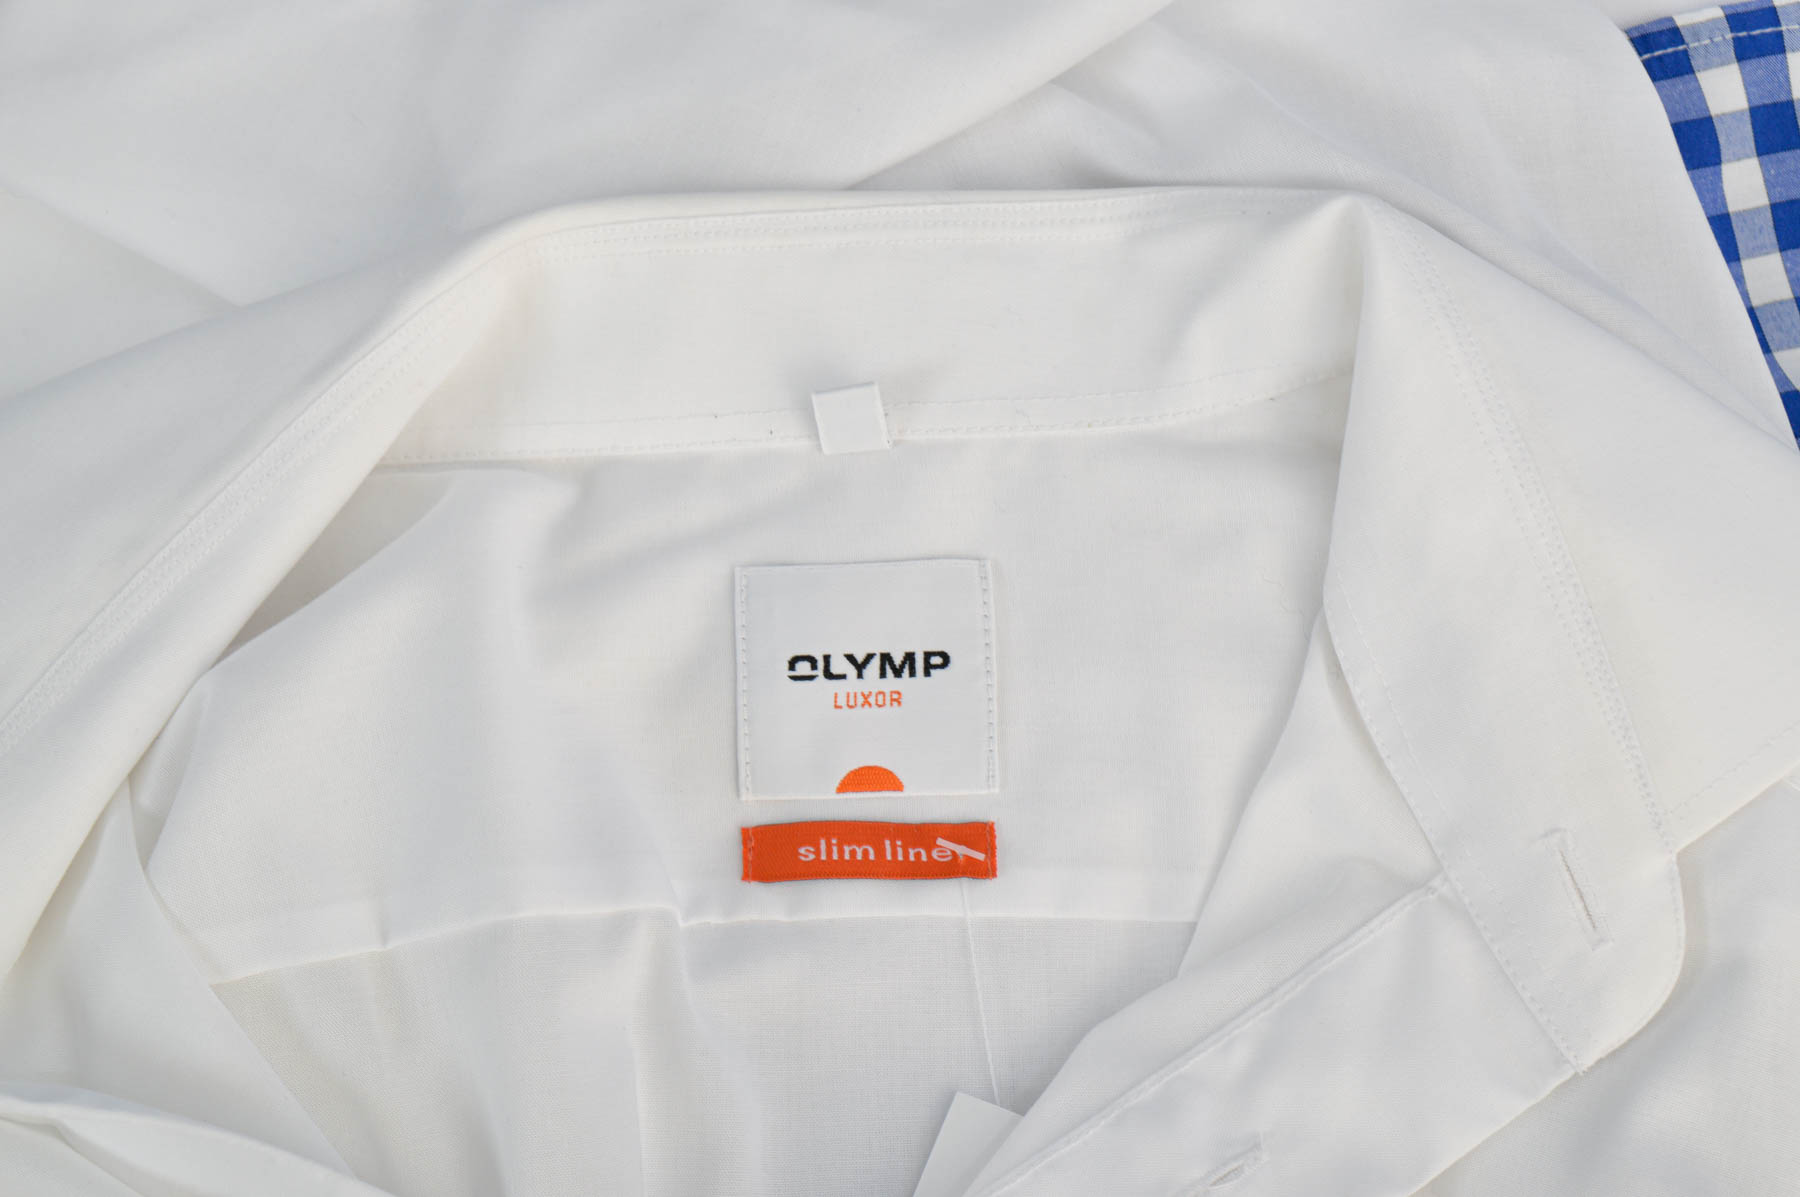 Męska koszula - Olymp - 2